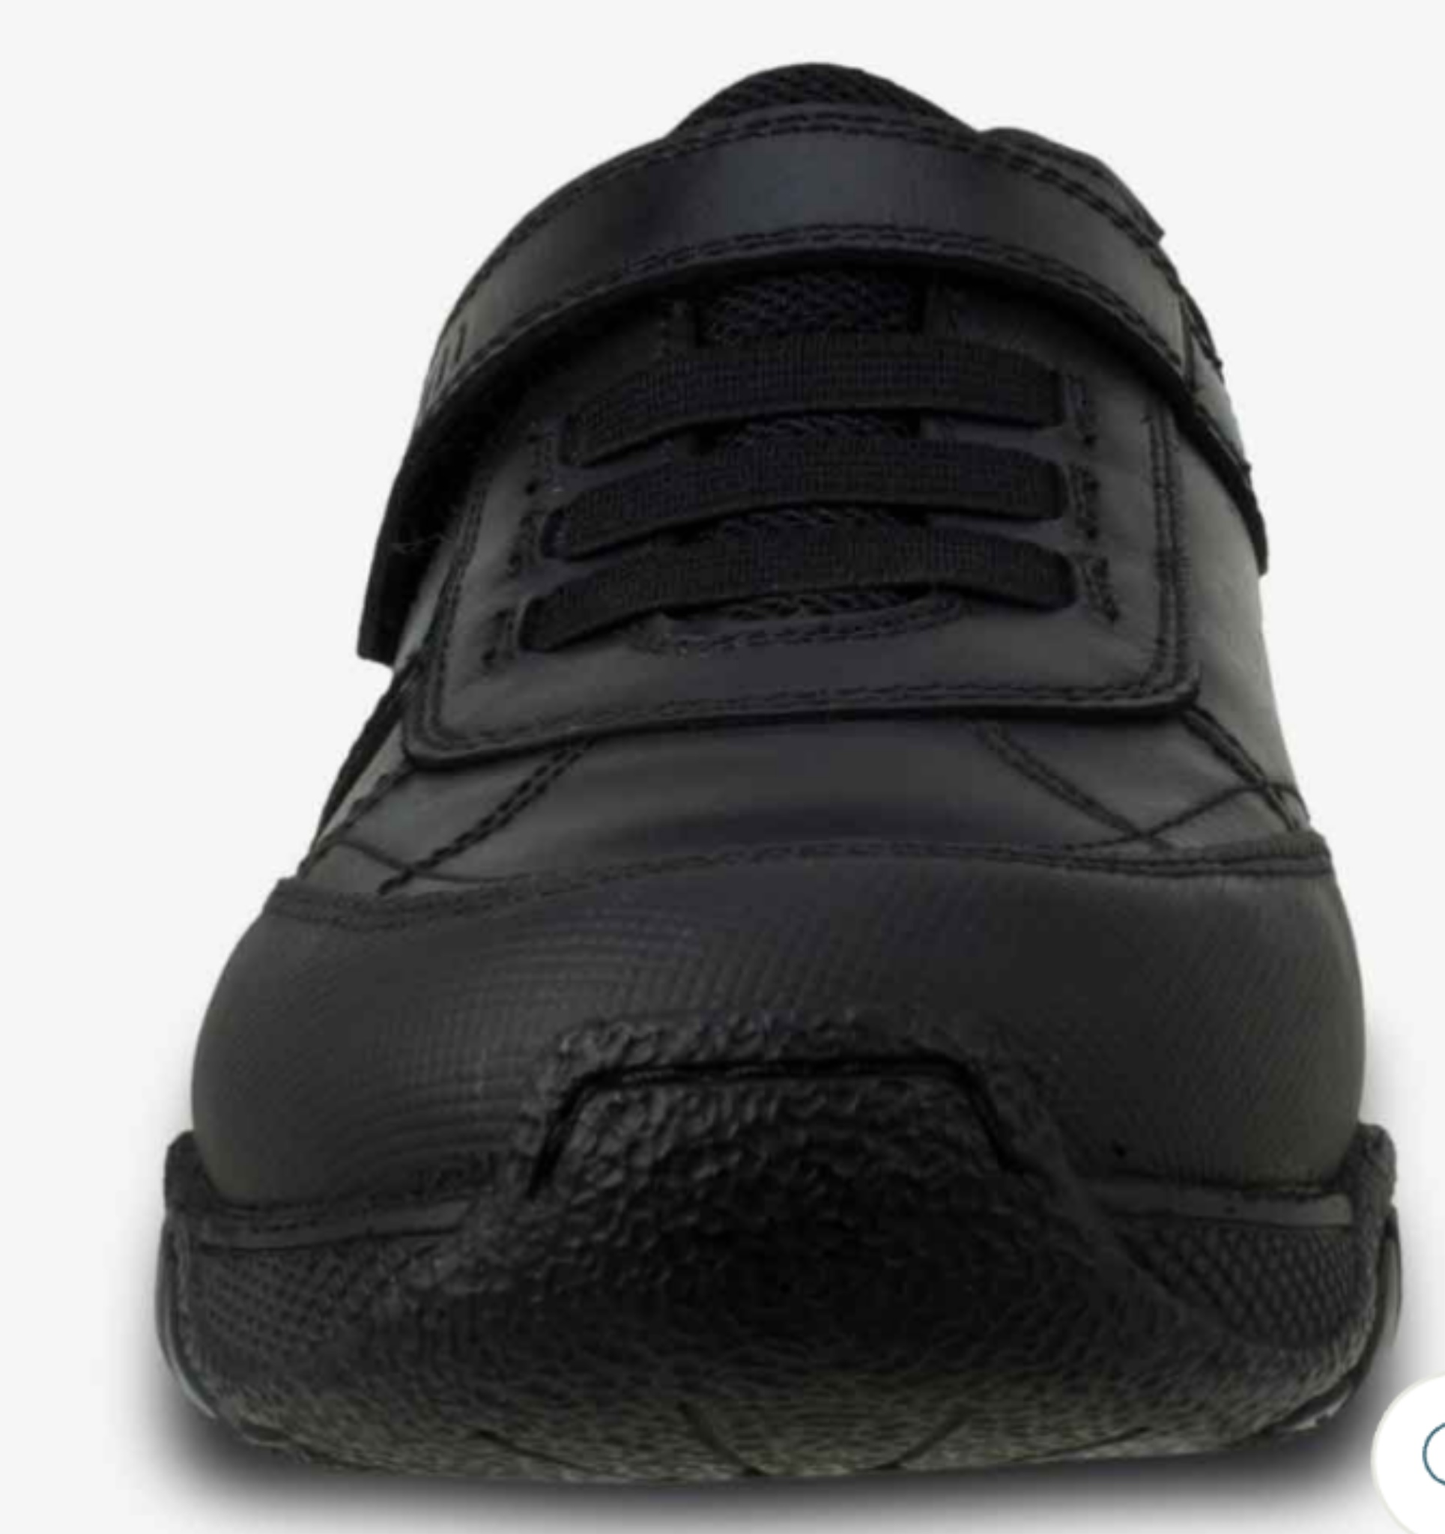 Term Maxx Chaussures d'école noires